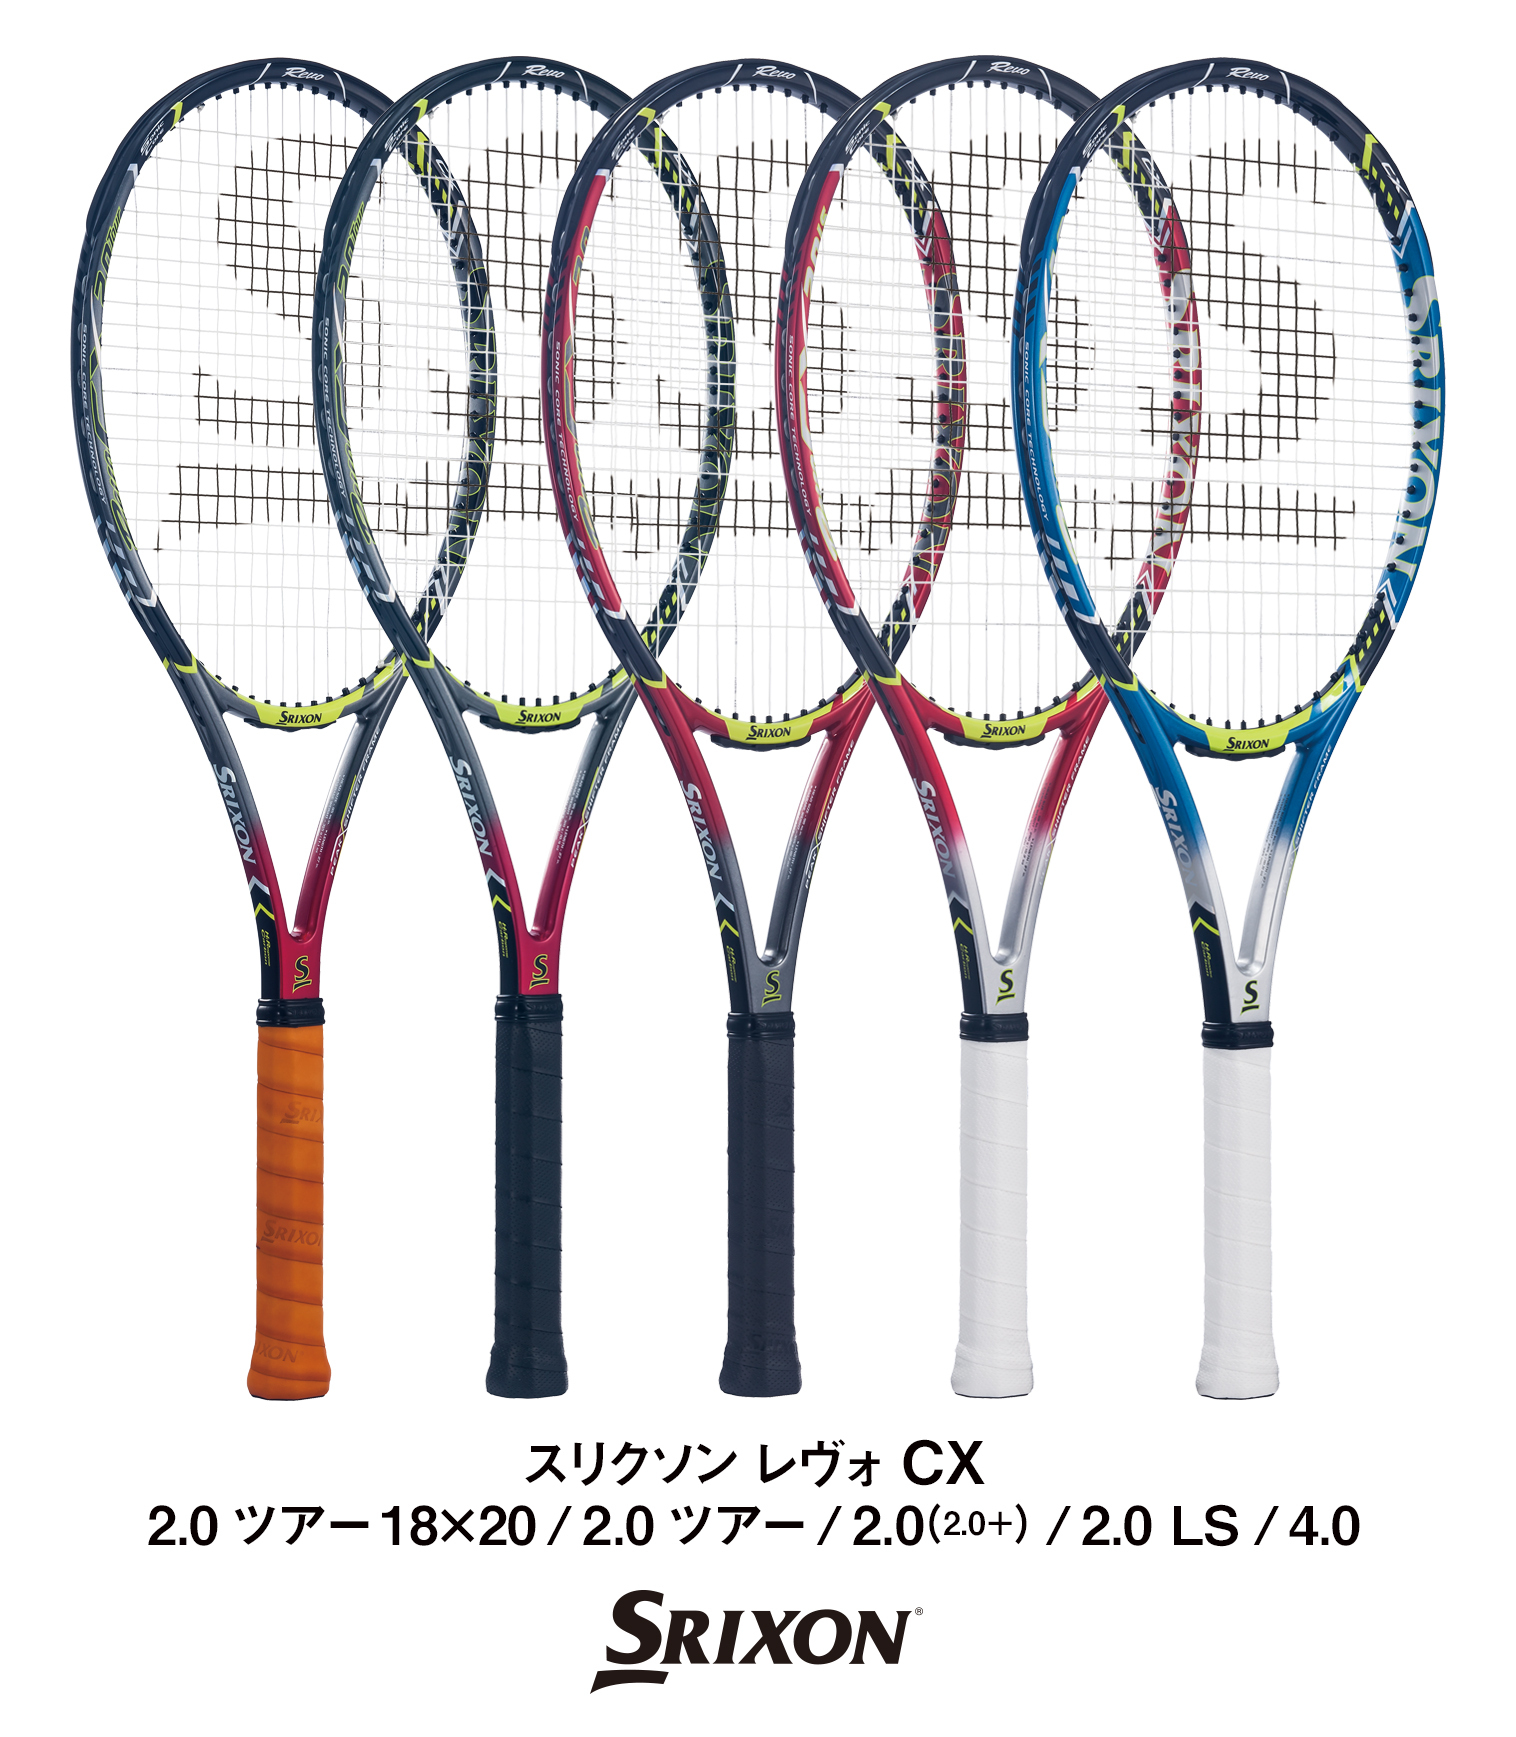 テニスラケット スリクソン スリクソン エックス 2.0プラス 2009年モデル (G2)SRIXON SRIXON X 2.0+ 2009G2装着グリップ